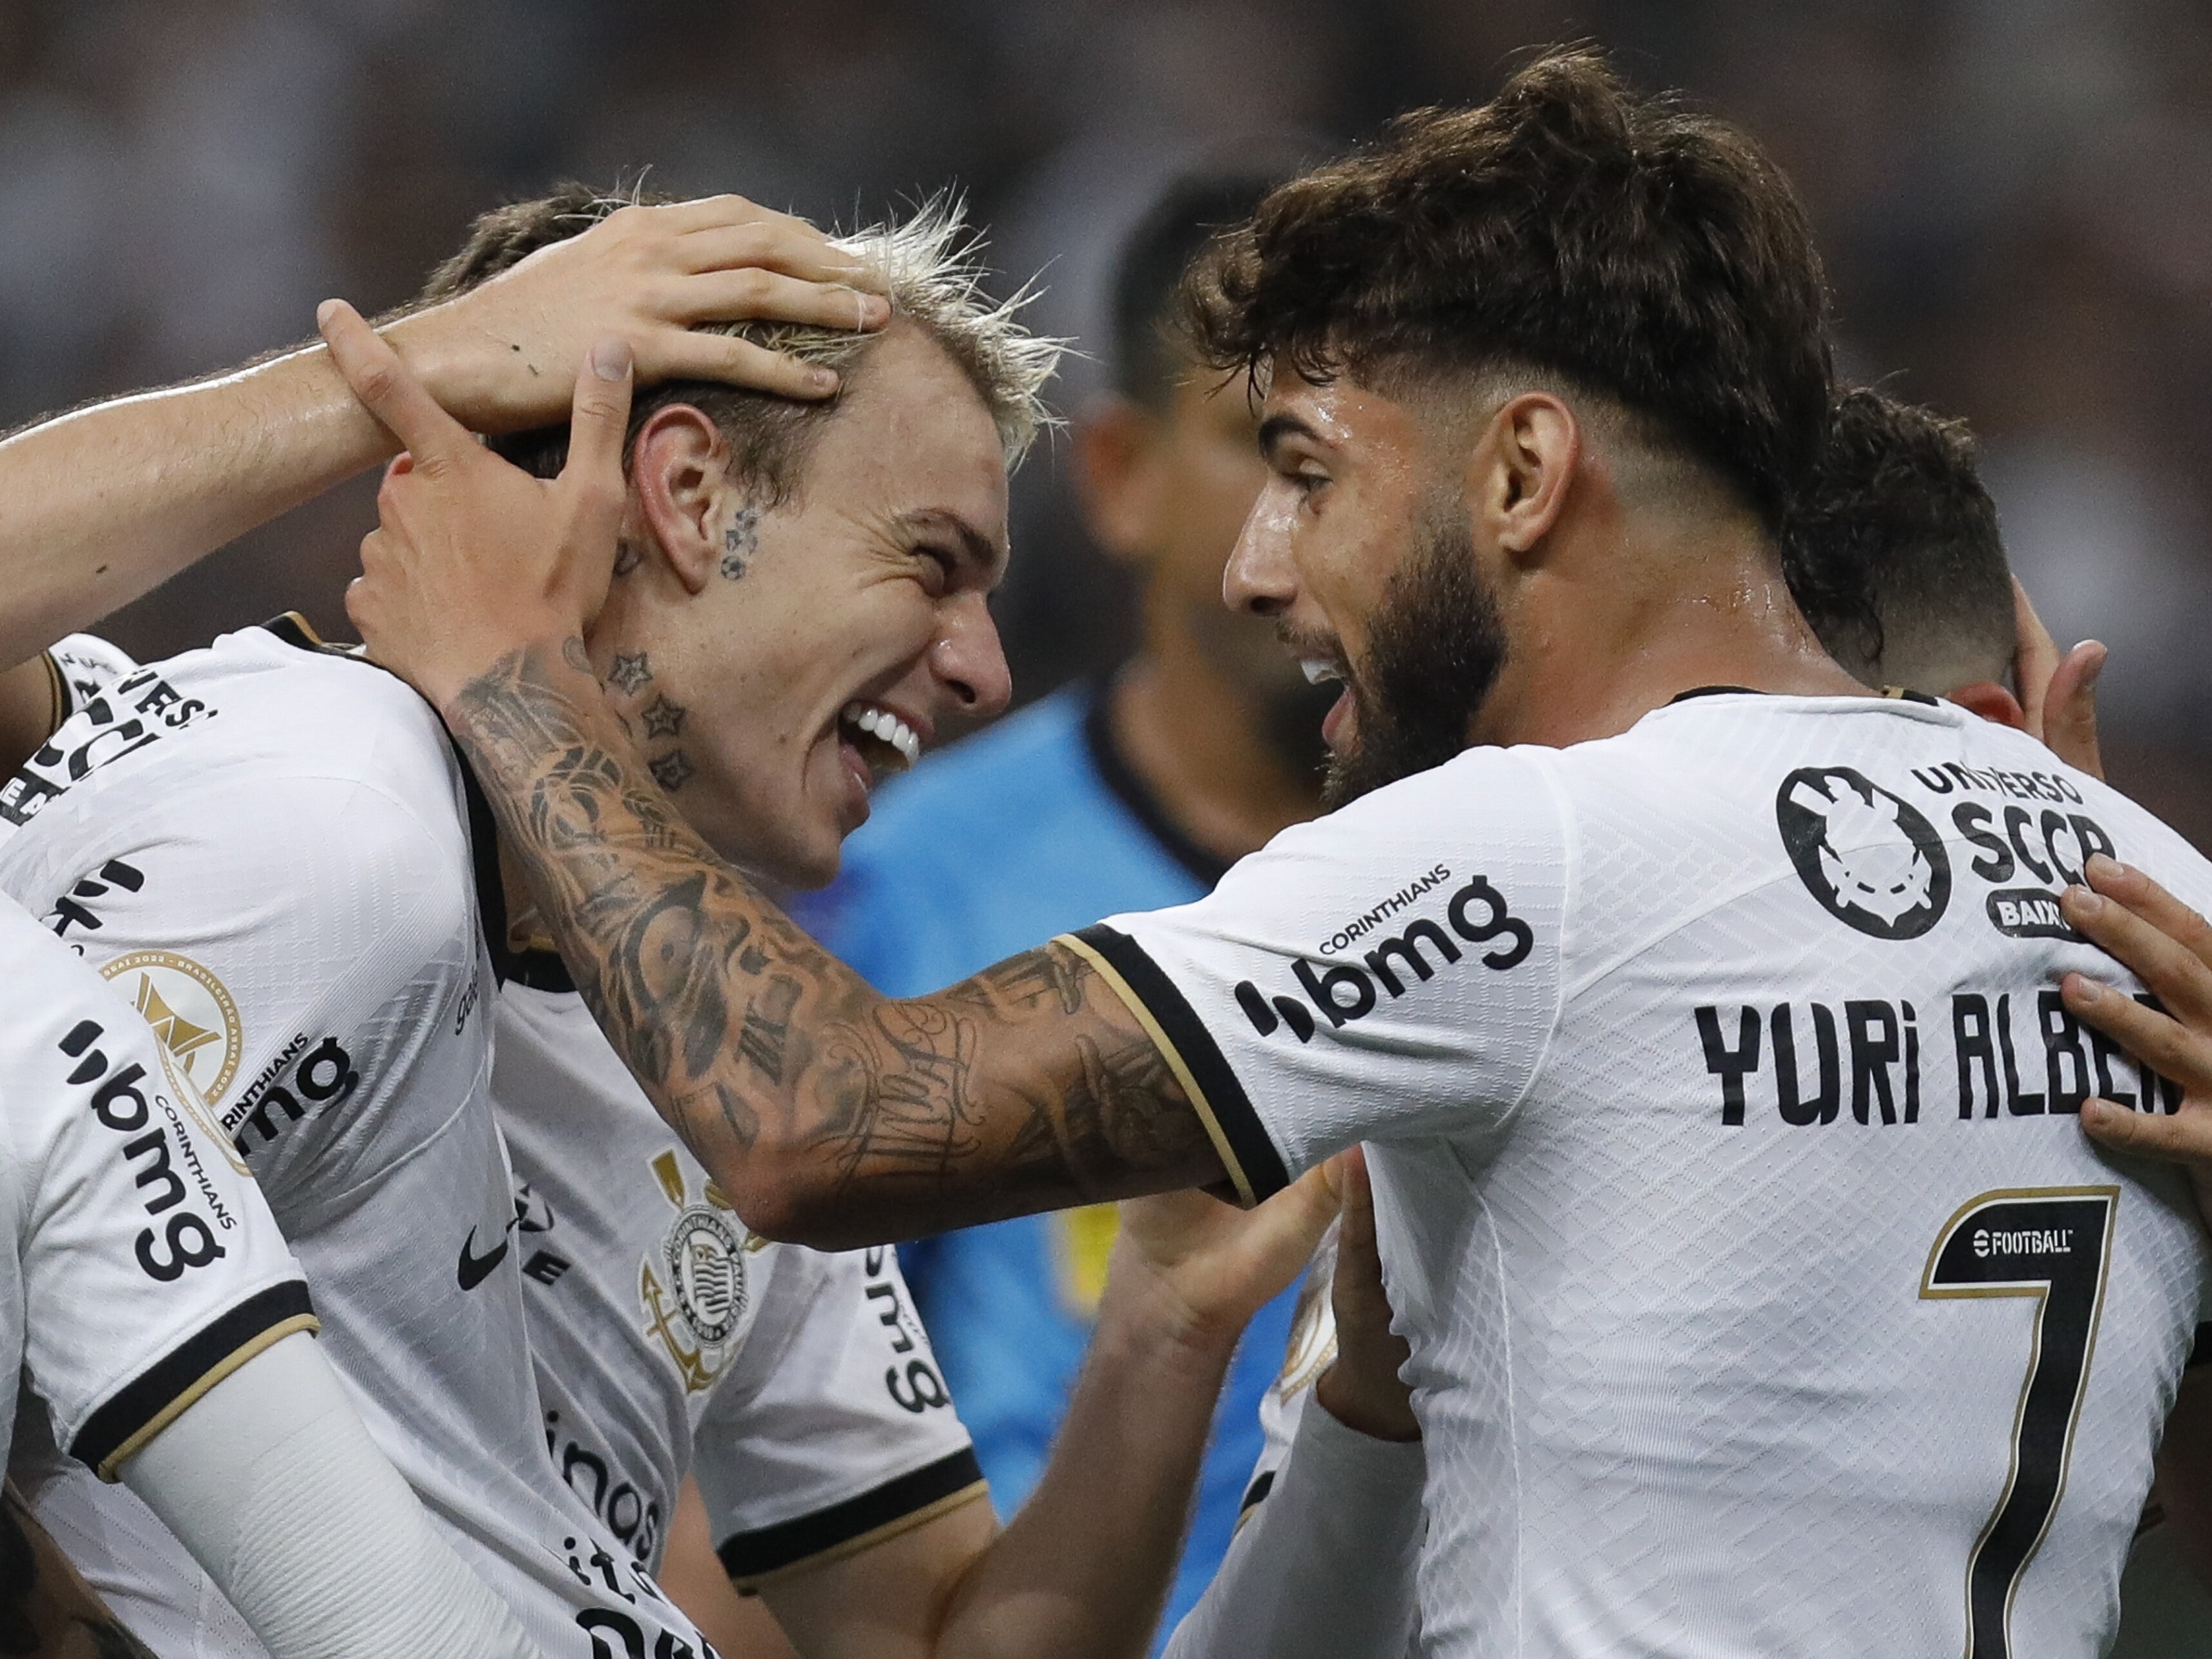 Corinthians e Coritiba empatam em jogo agitado pelo Brasileirão